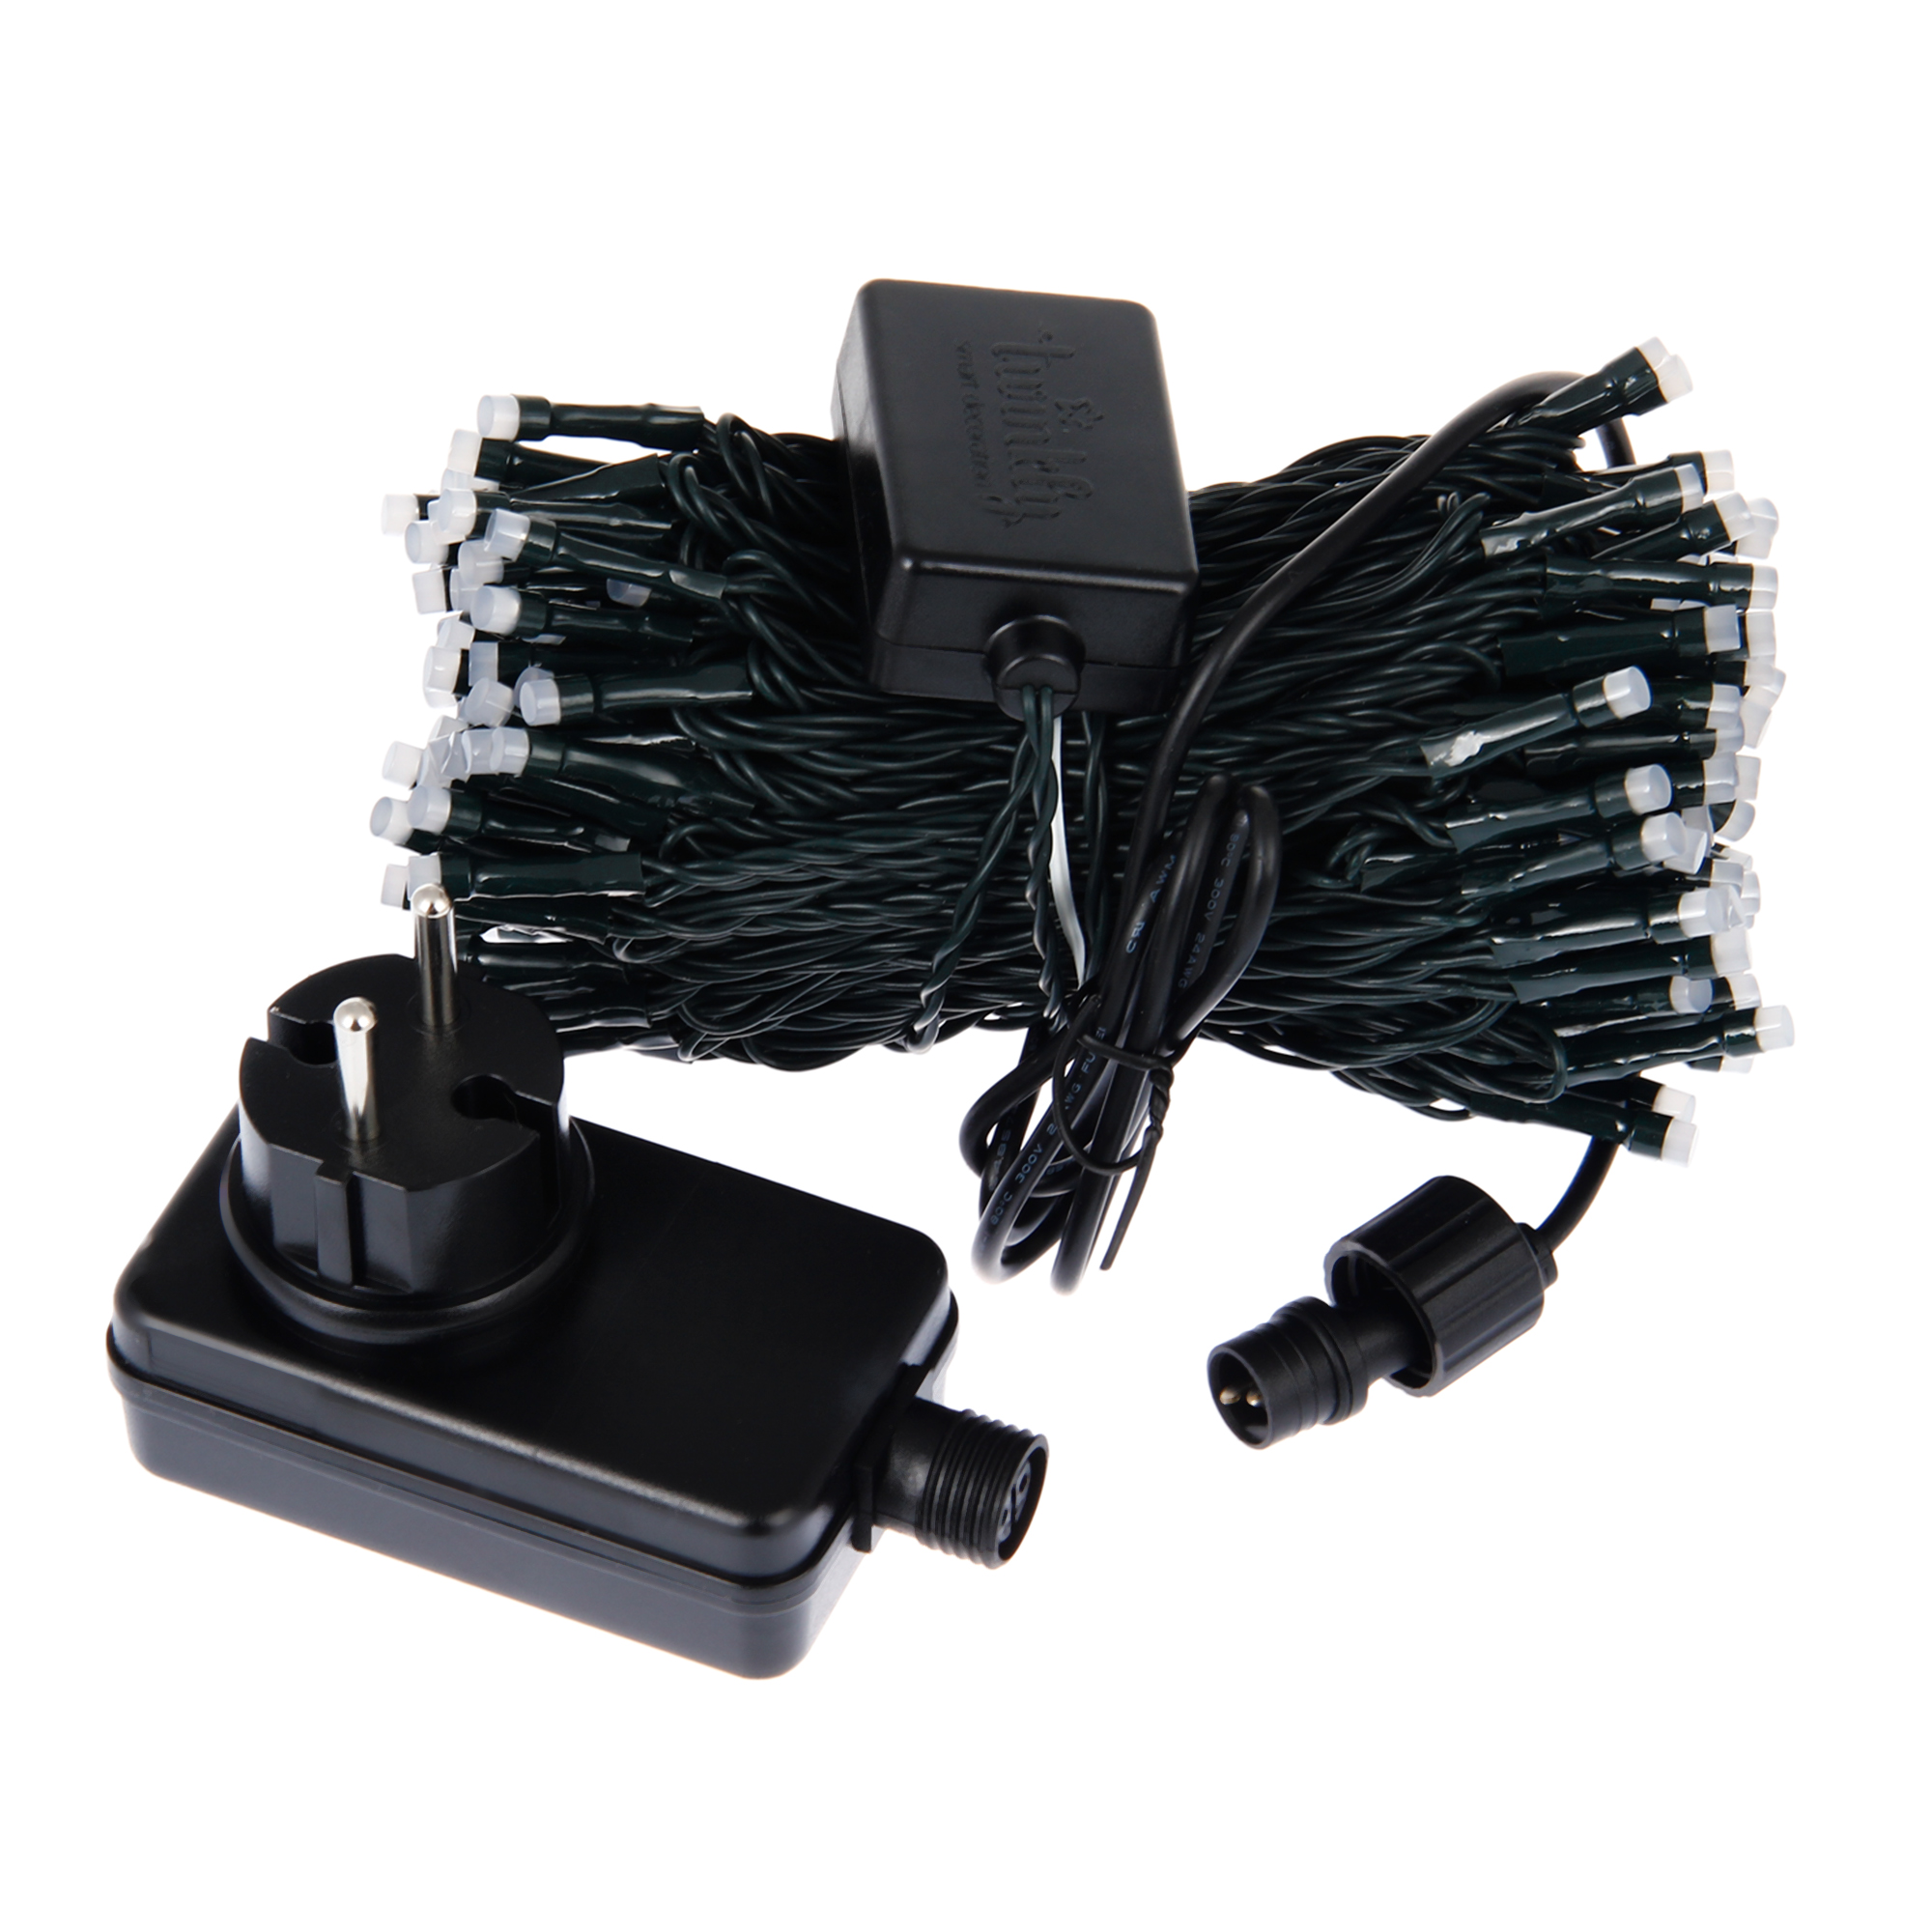 Гирлянда елочная электрическая Twinkly TW-225-S-EU-P-C LED 225 22.5 м со стартовым шнуром, цвет черный - фото 17